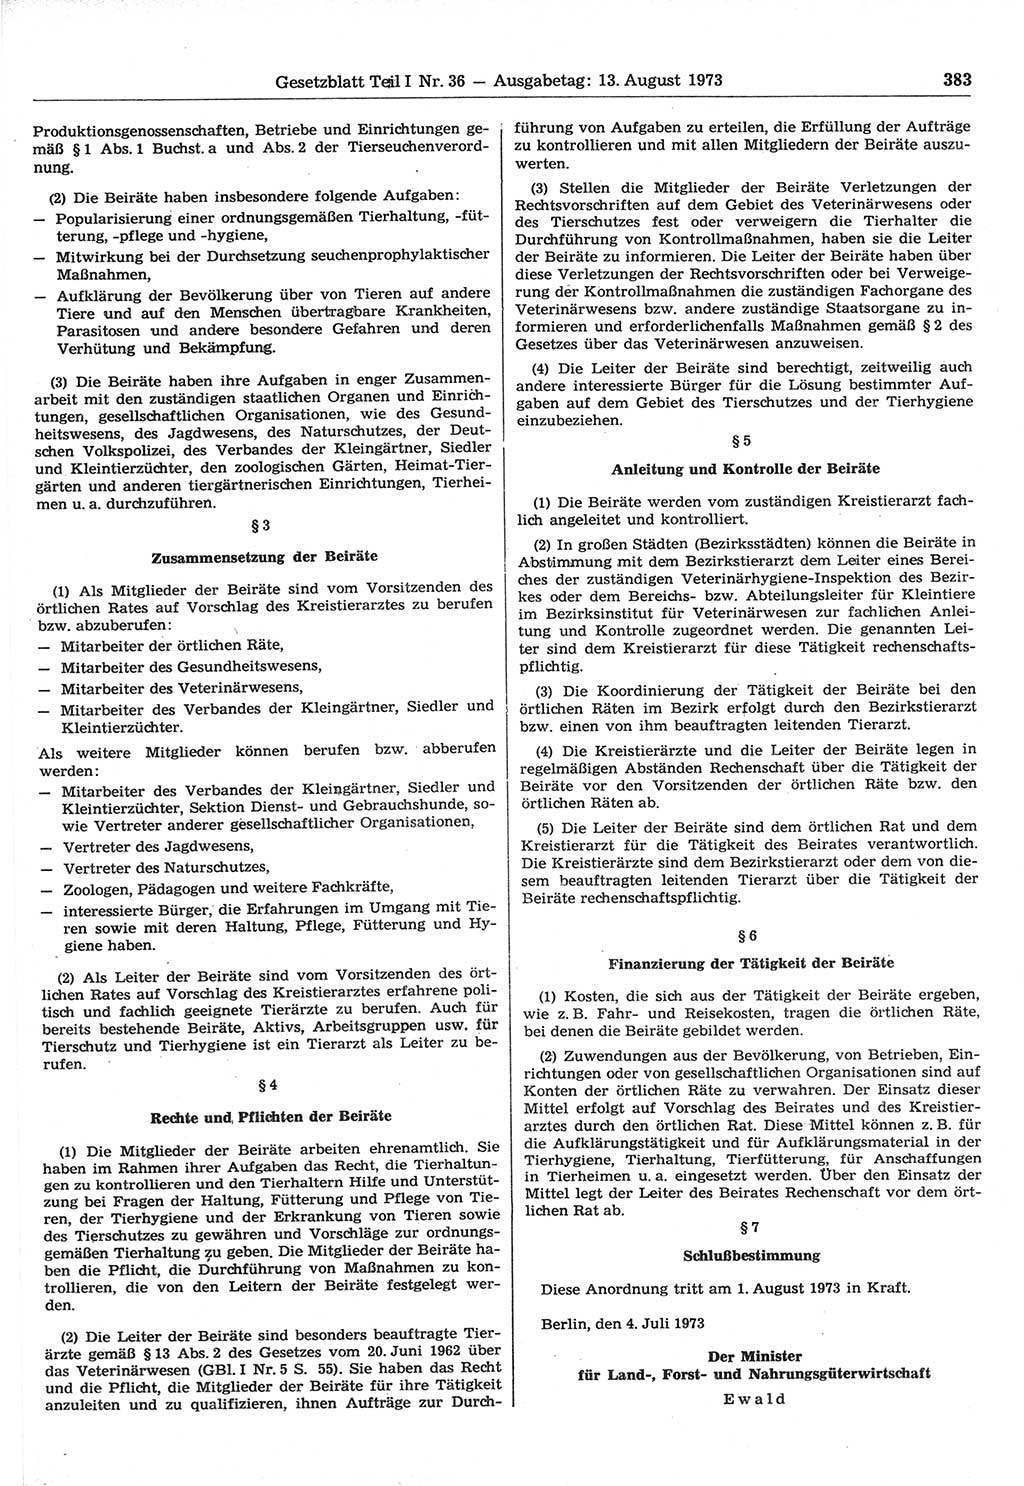 Gesetzblatt (GBl.) der Deutschen Demokratischen Republik (DDR) Teil Ⅰ 1973, Seite 383 (GBl. DDR Ⅰ 1973, S. 383)